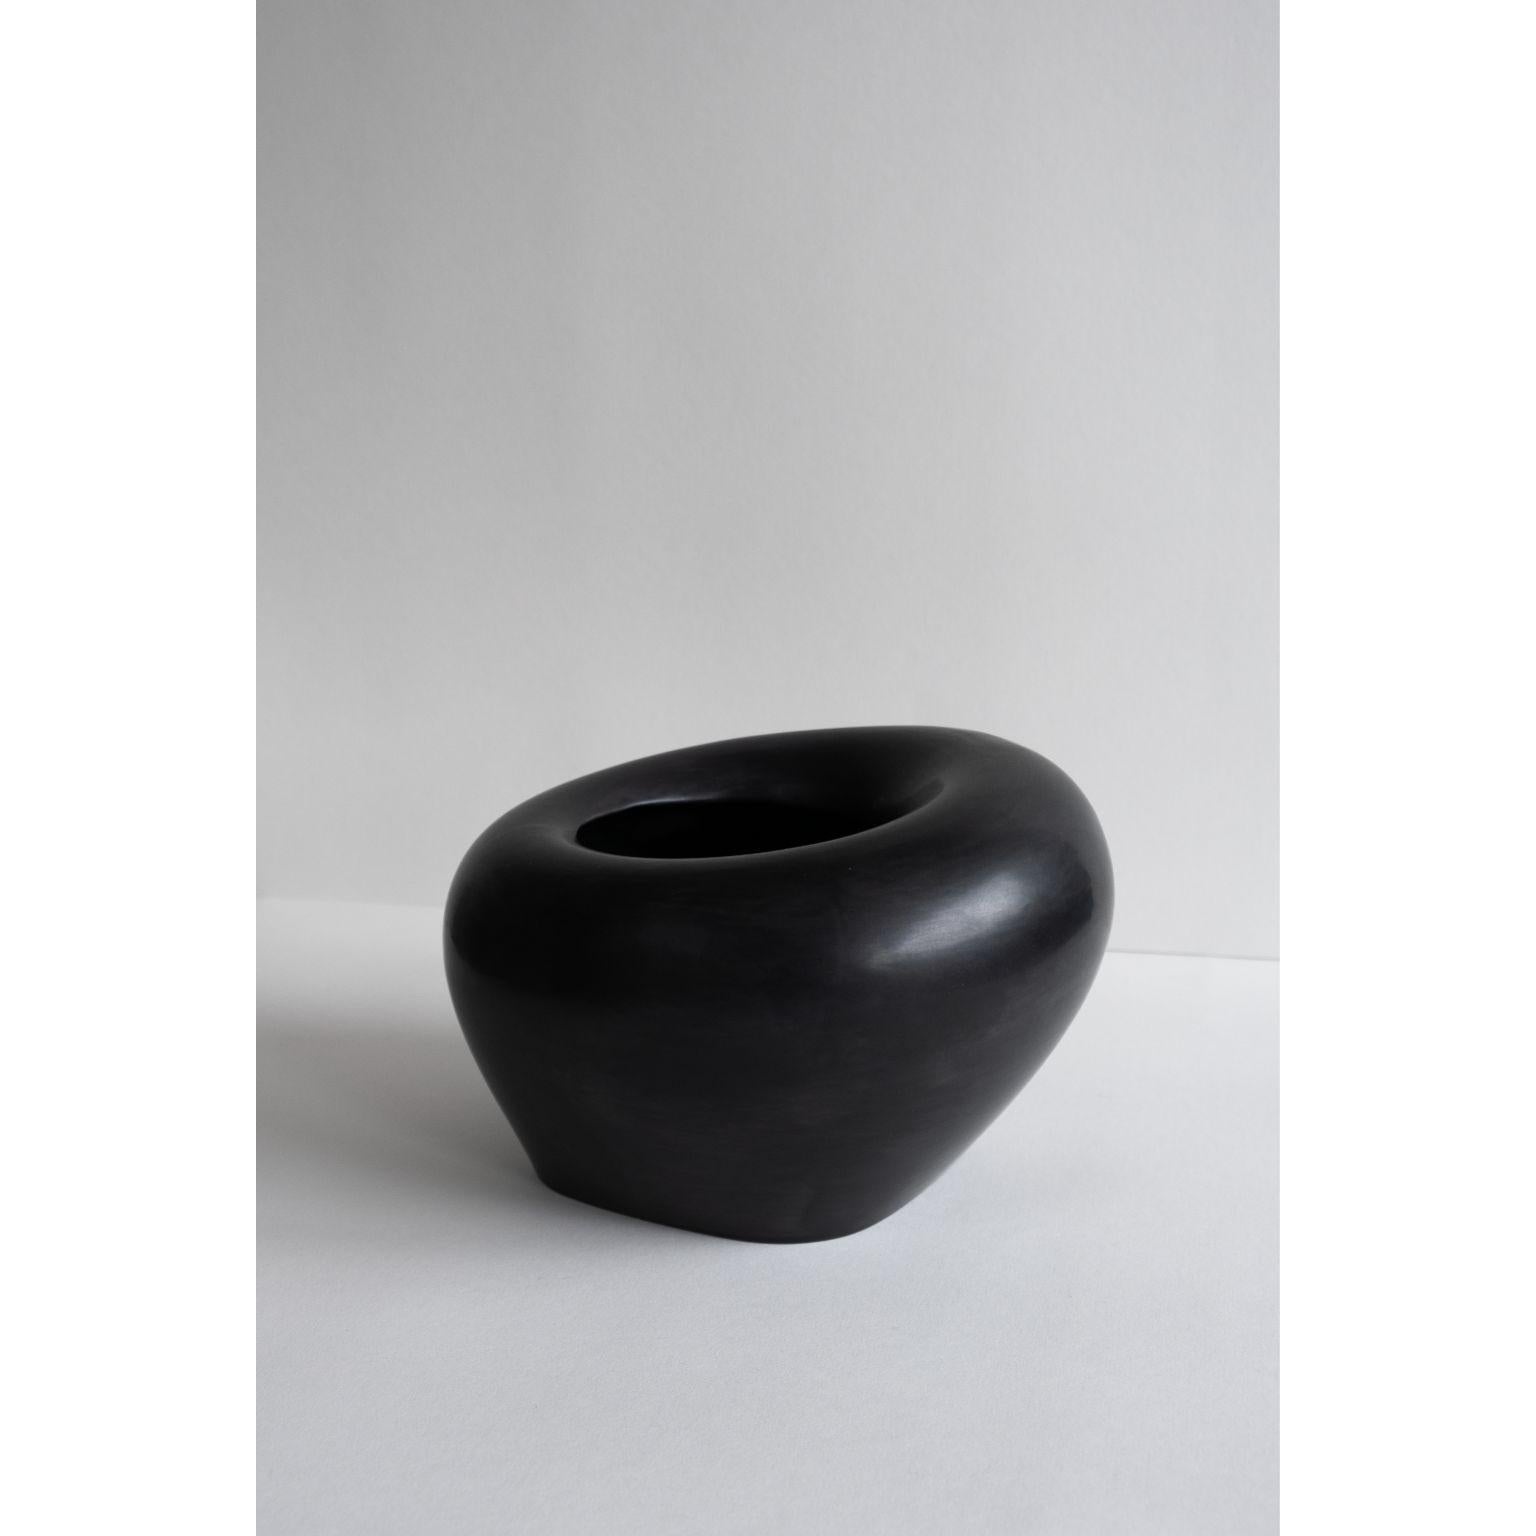 Flexible geformte Vase 3 von Rino Claessens
Abmessungen: T 26 x B 26 x H 16,5 cm.
MATERIALIEN: Glasierte Keramik.
Ausführung: Satinierte schwarze Glanzglasur.
Gewicht: 1.7 kg.

Handgefertigt in Eindhoven, Niederlande. Dieses Produkt ist